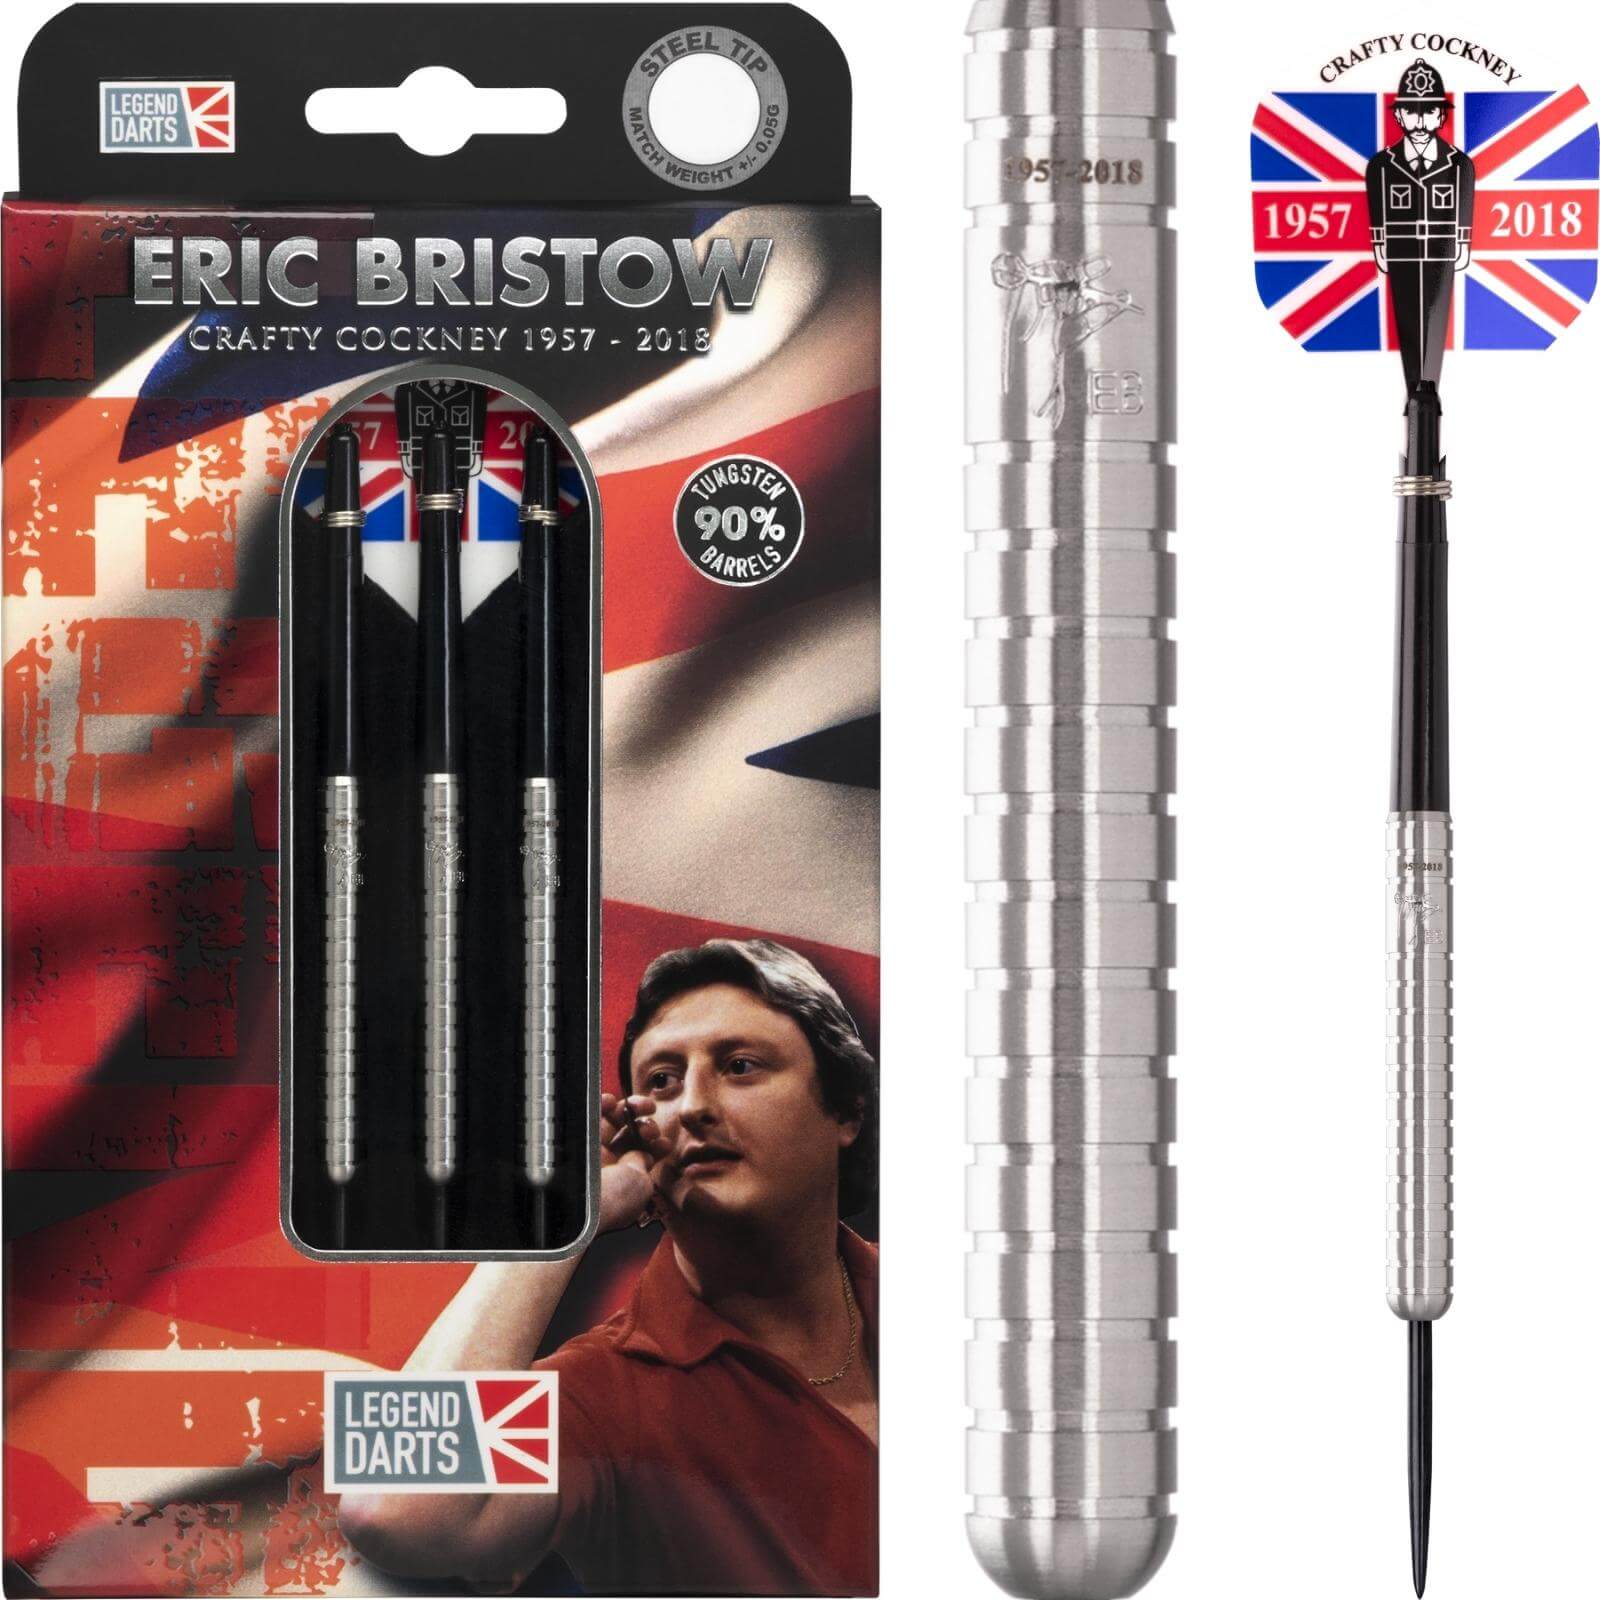 Darts - Legend Darts - Eric Bristow Natural Darts - Steel Tip - 90% Tungsten - 22g 24g 26g 